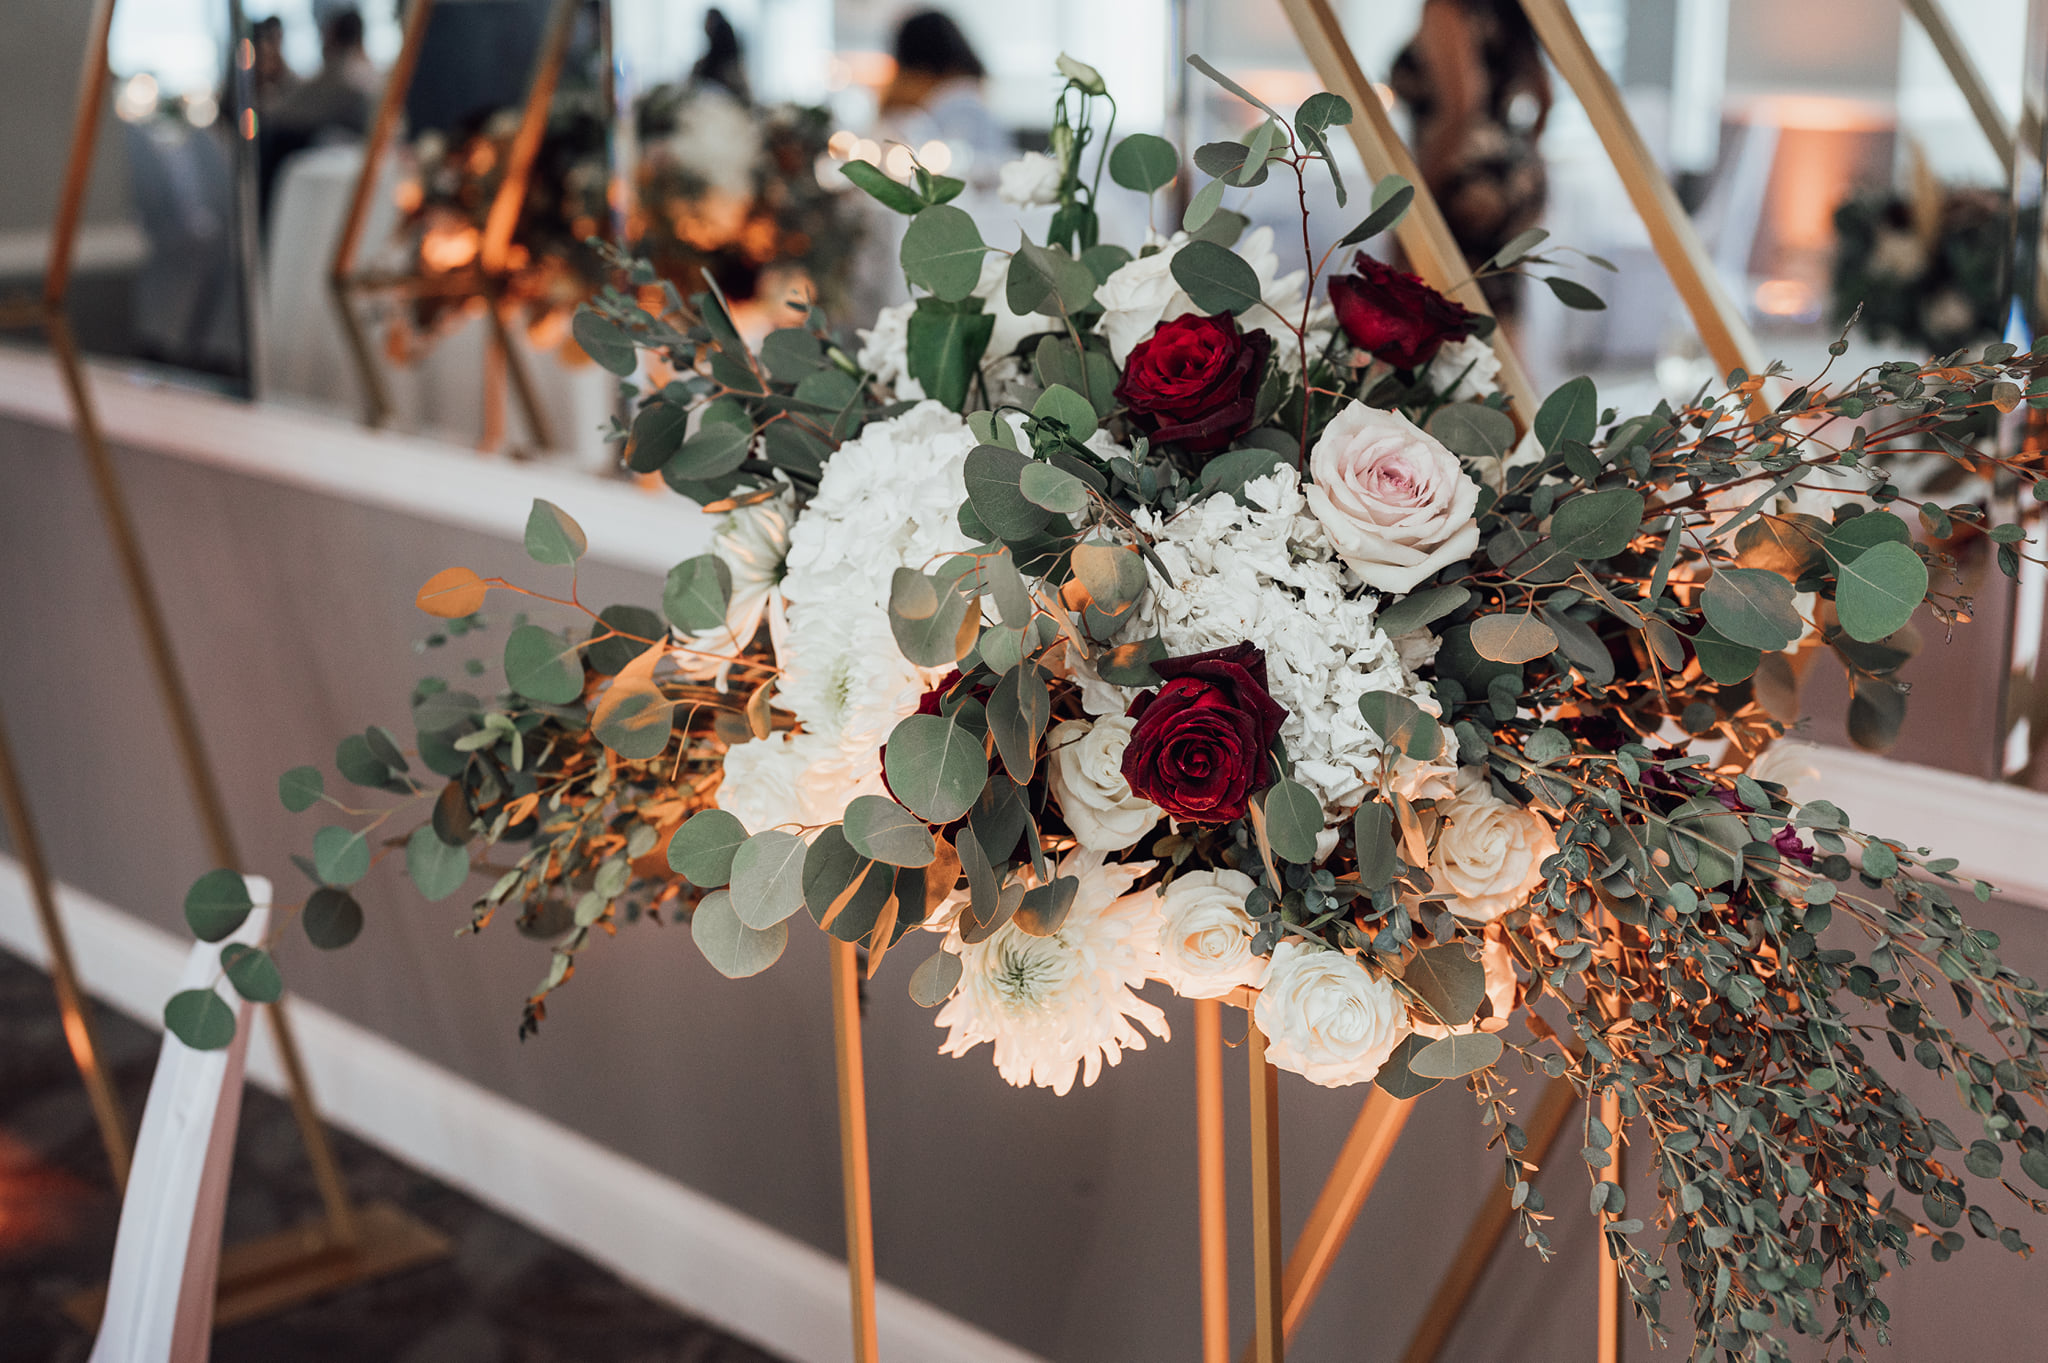 elegant events florist - floral bouquet - bridesmaid bouquets - - philadelphia wedding reception - reception floral centerpiece - sweetheart table - table centerpiece - wedding floral